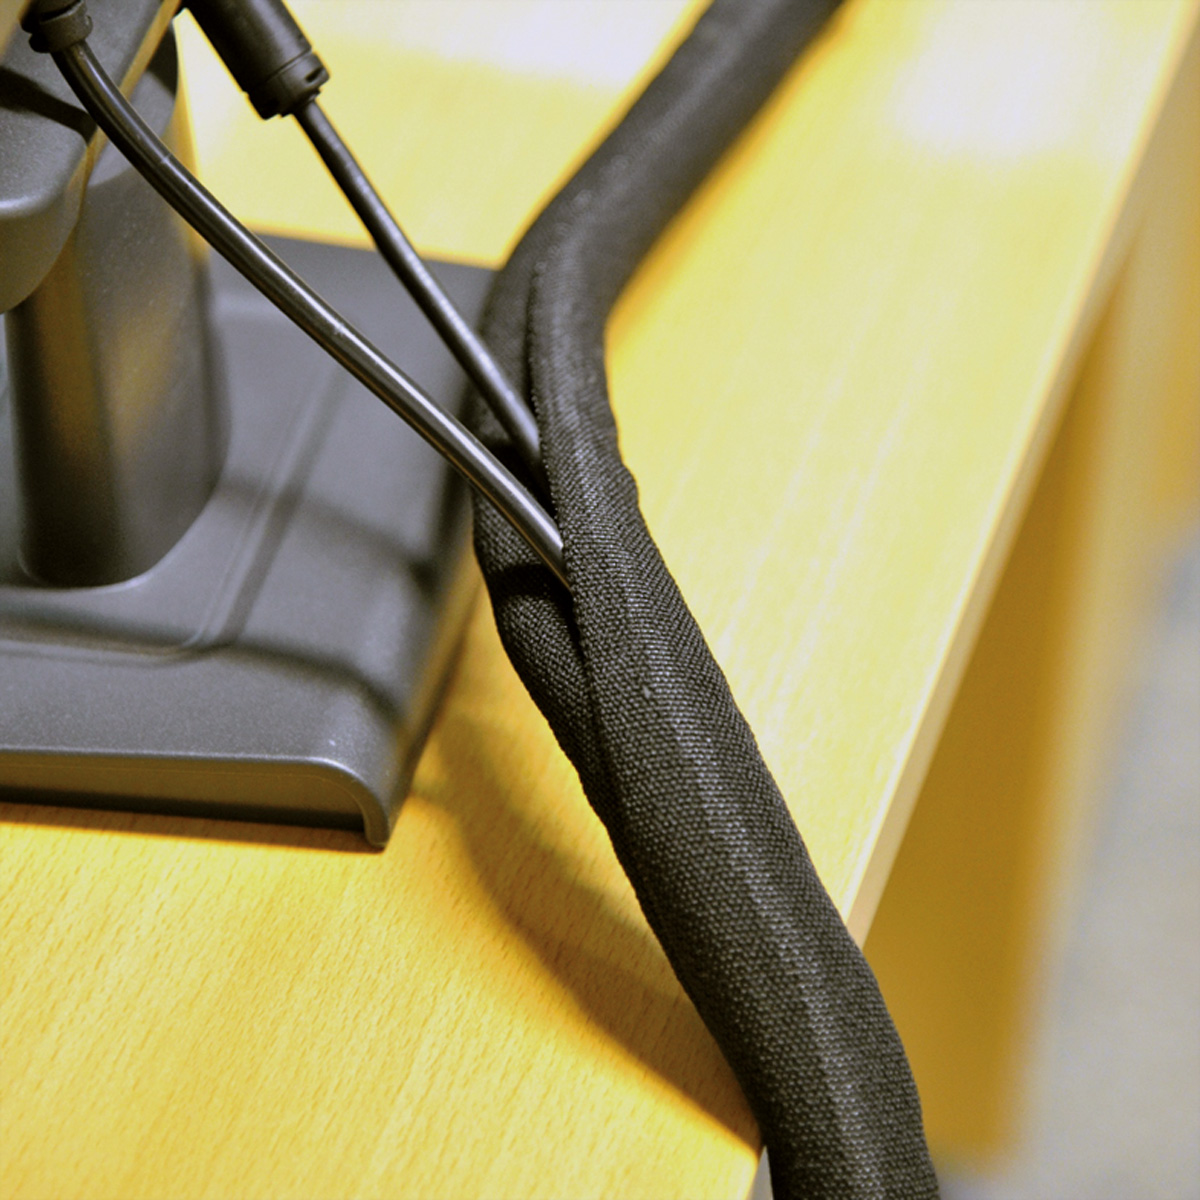 VALUE SNAP schwarz Kabelbinder, für Kabelbündelung Gewebeschlauch